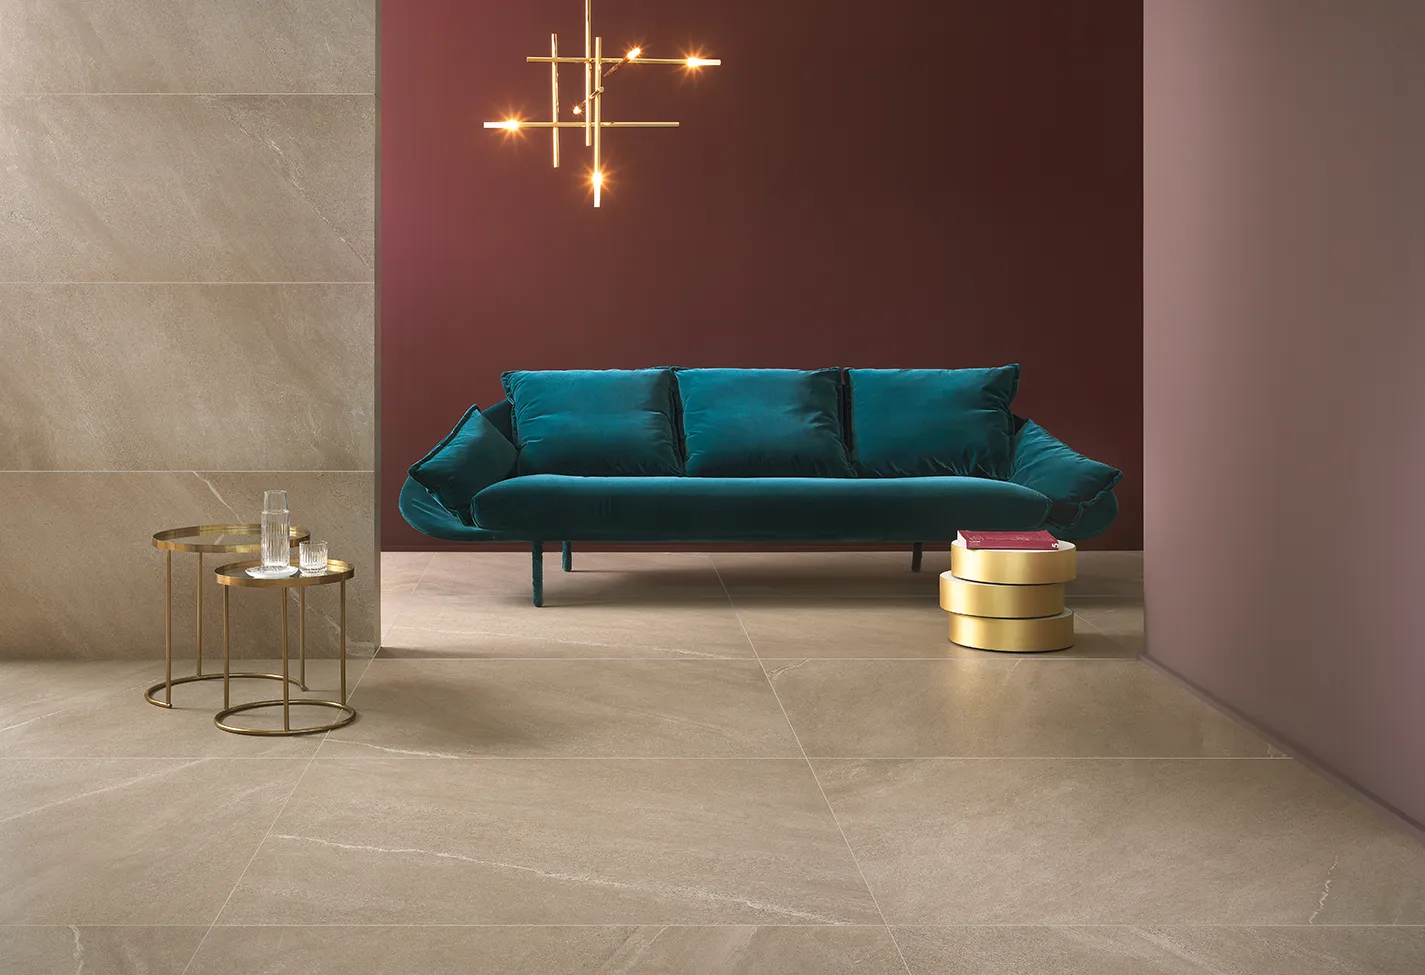 Pavimenti e parete con piastrelle in gres porcellanato effetto pietra colore beige, in un elegante soggiorno con divano azzurro.